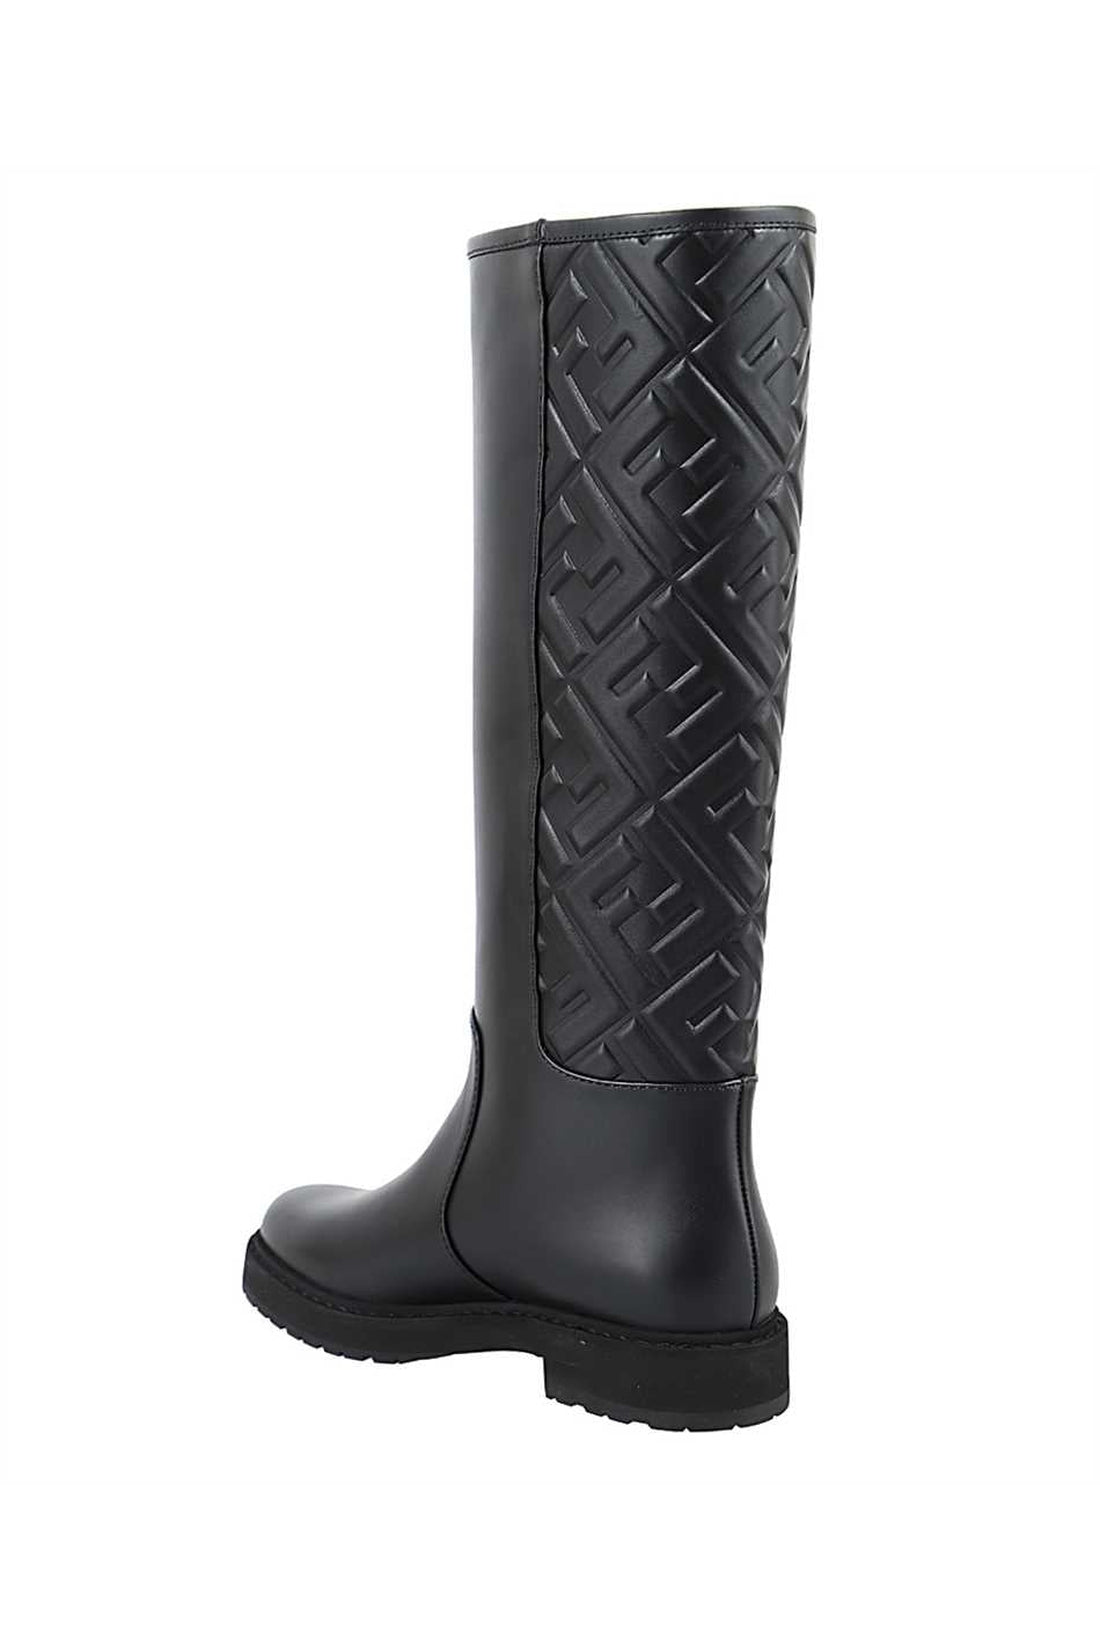 Fendi-OUTLET-SALE-Leather boots-ARCHIVIST